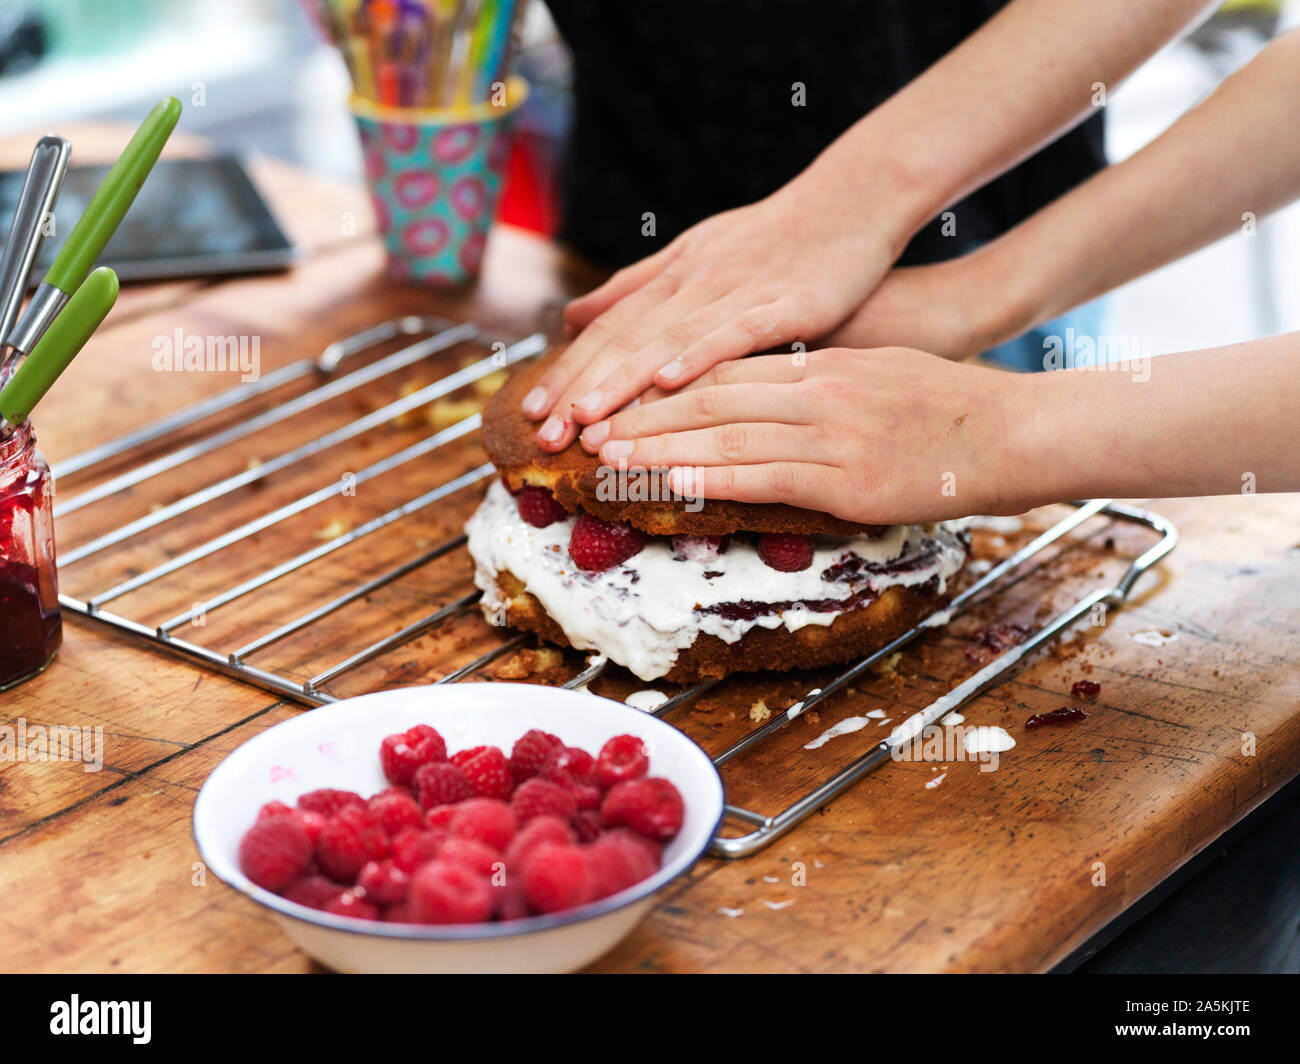 Chica y su hermana hornear un pastel, presionando hacia abajo la capa superior en la mesa de la cocina, vista recortada de manos Foto de stock